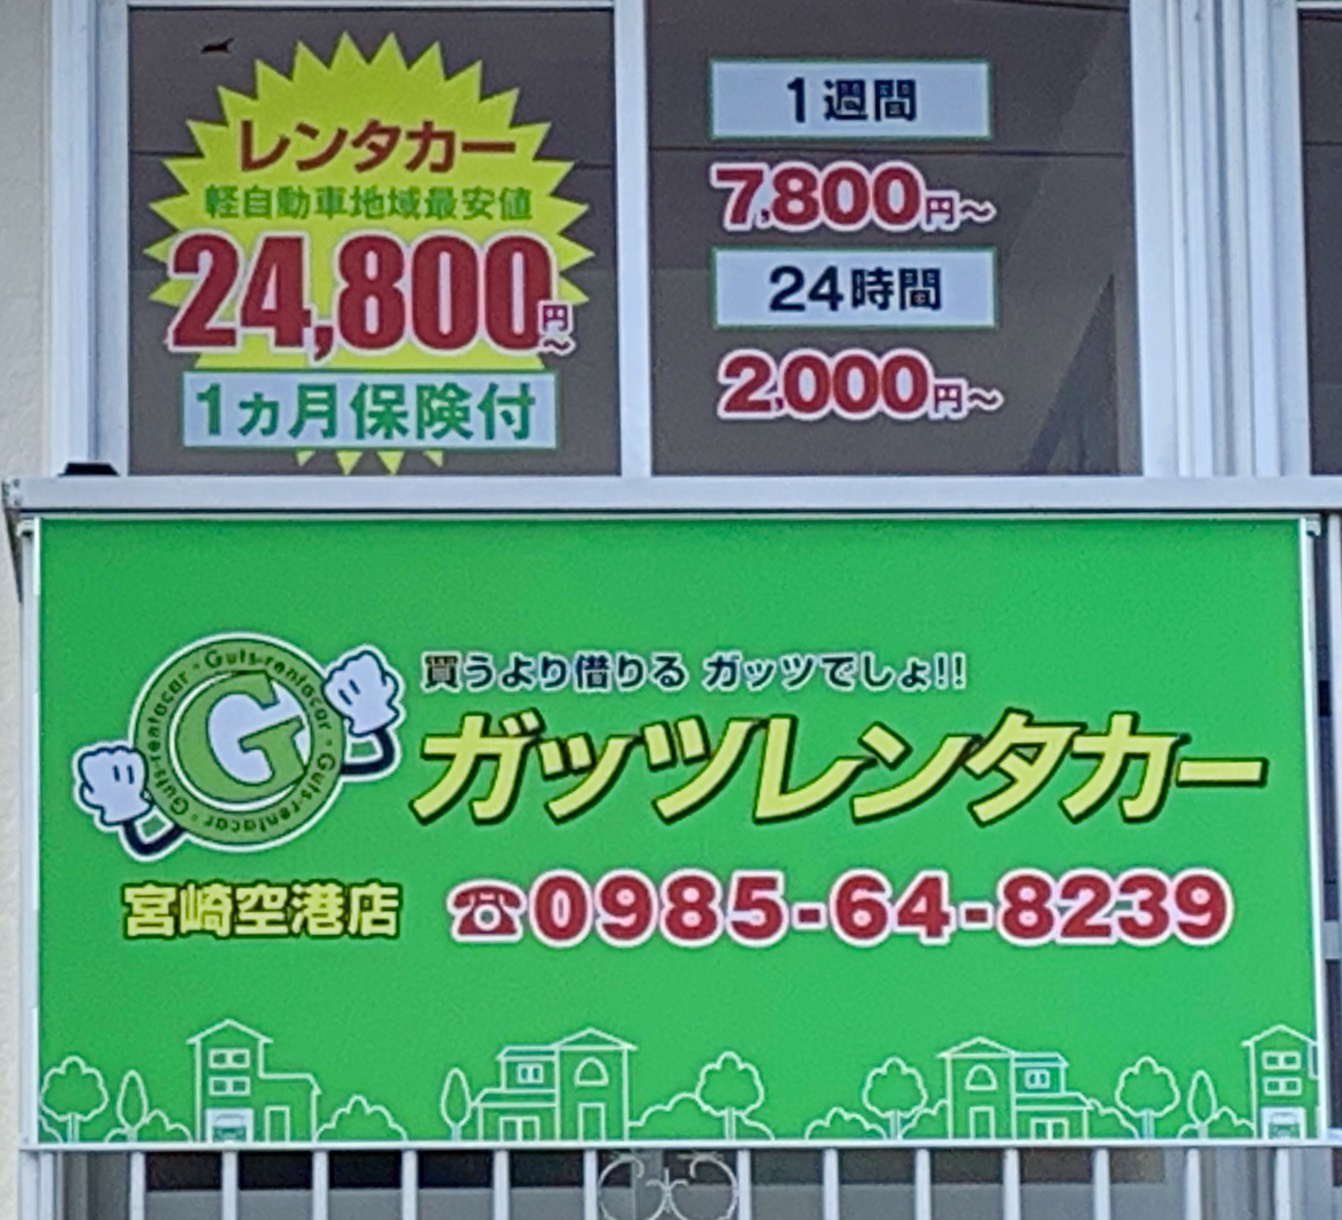 宮崎空港店 格安レンタカーのガッツレンタカー 24時間 2 000円